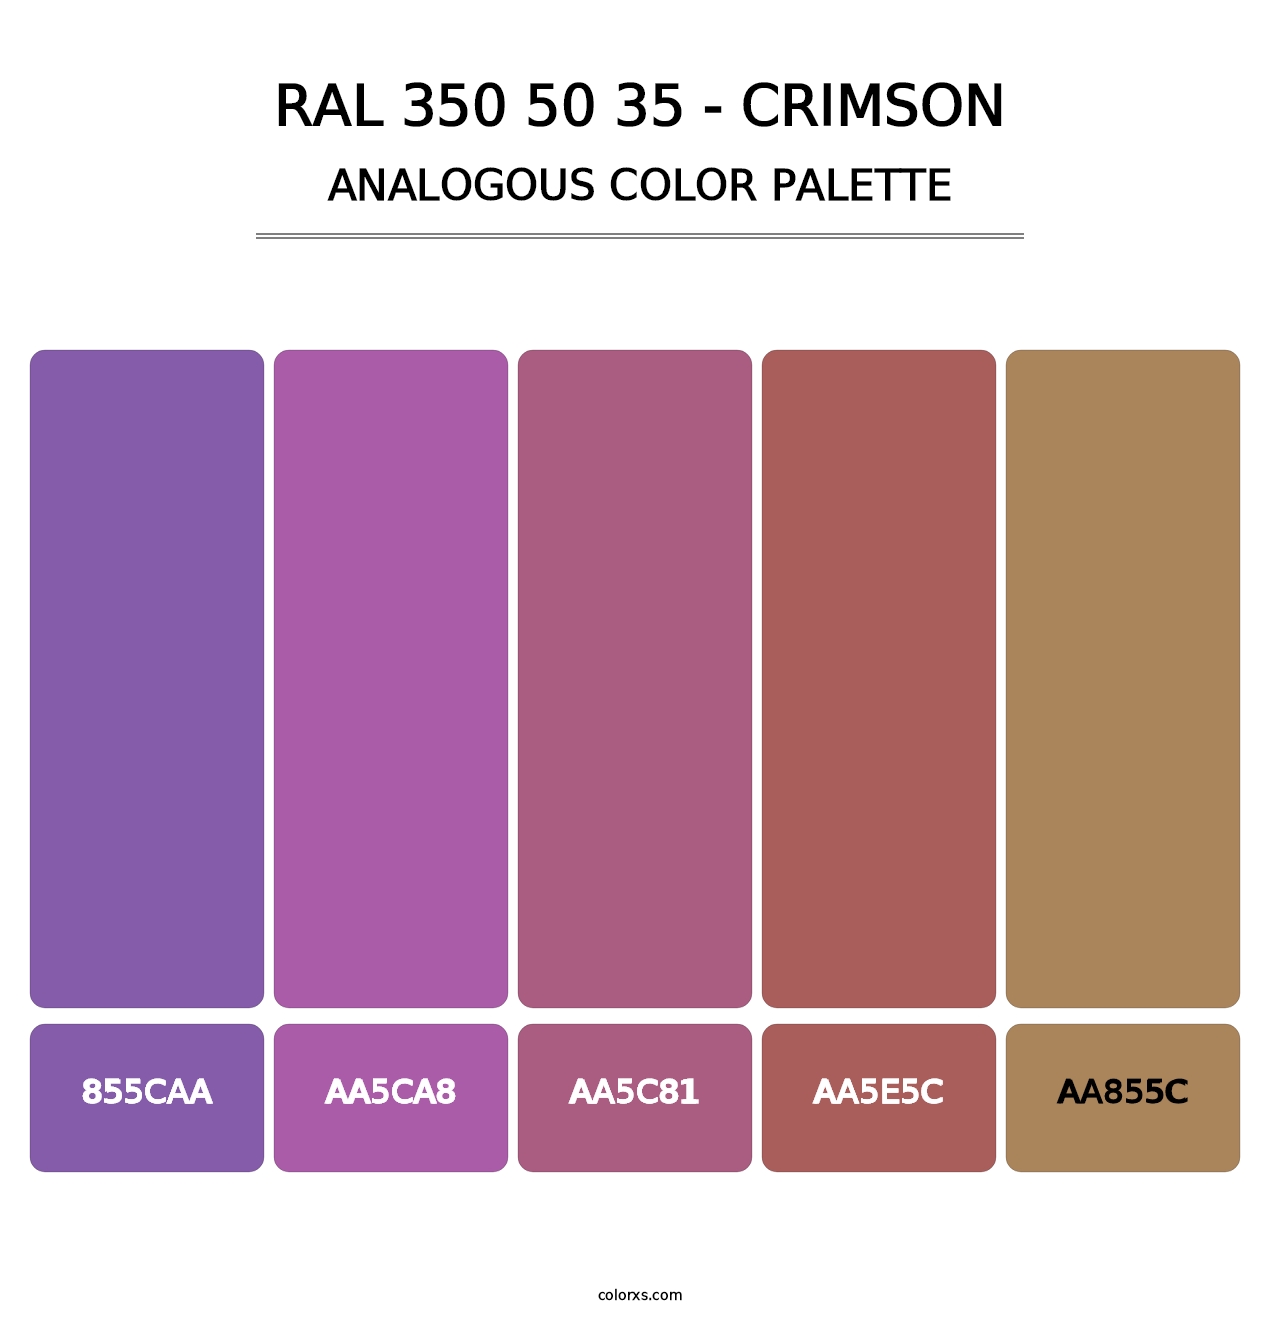 RAL 350 50 35 - Crimson - Analogous Color Palette